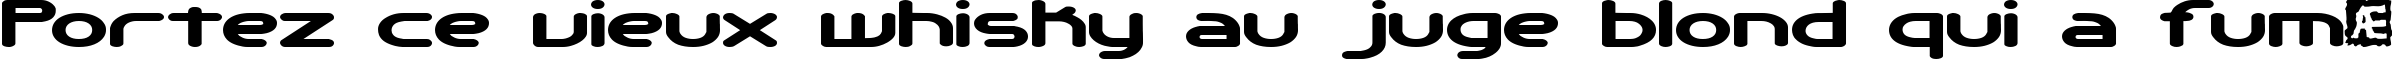 Пример написания шрифтом Automatica BRK текста на французском